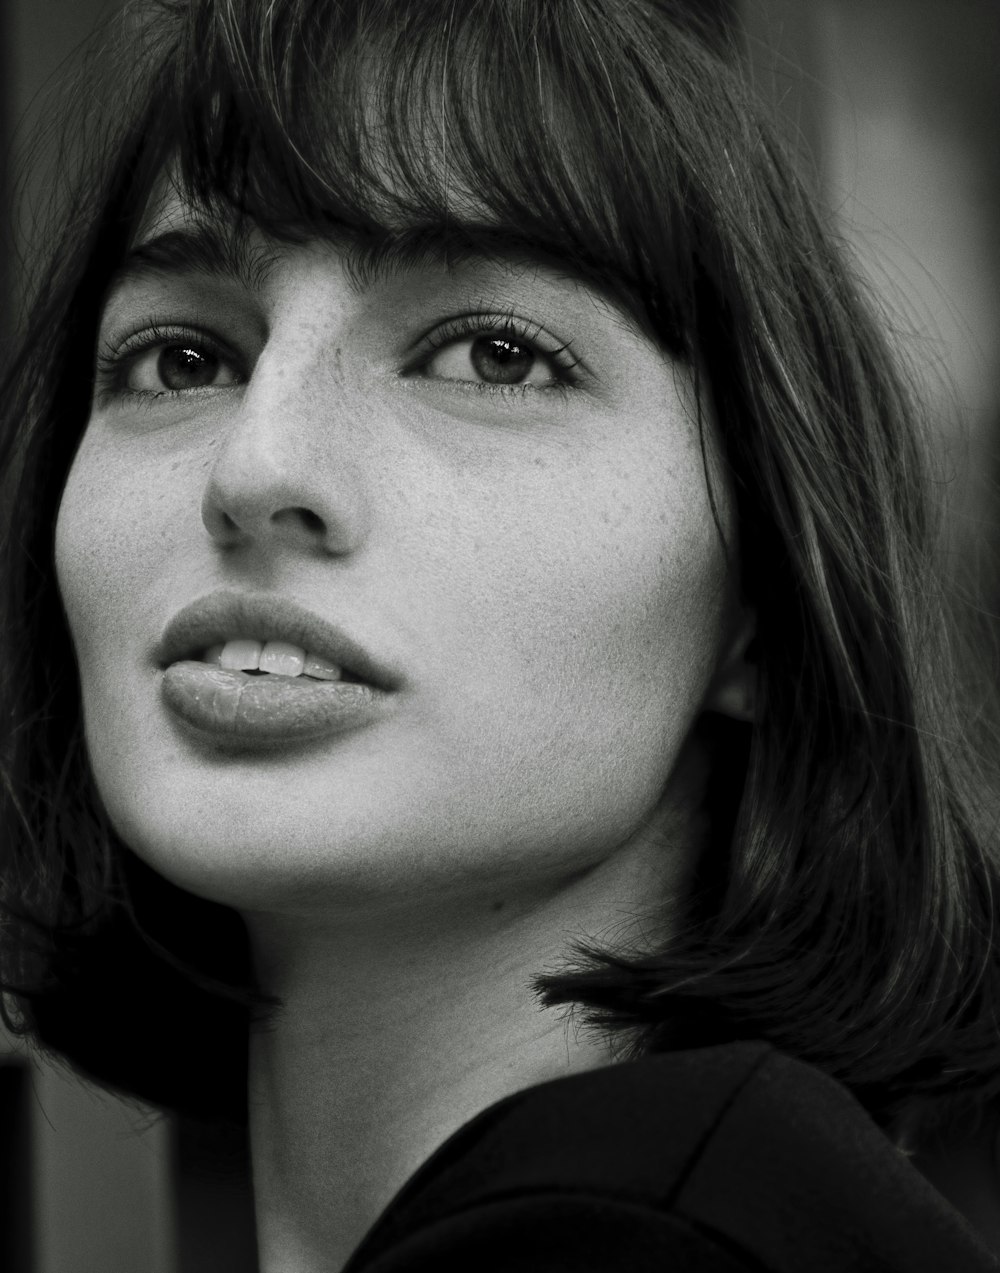 Una foto en blanco y negro de una mujer con flequillo